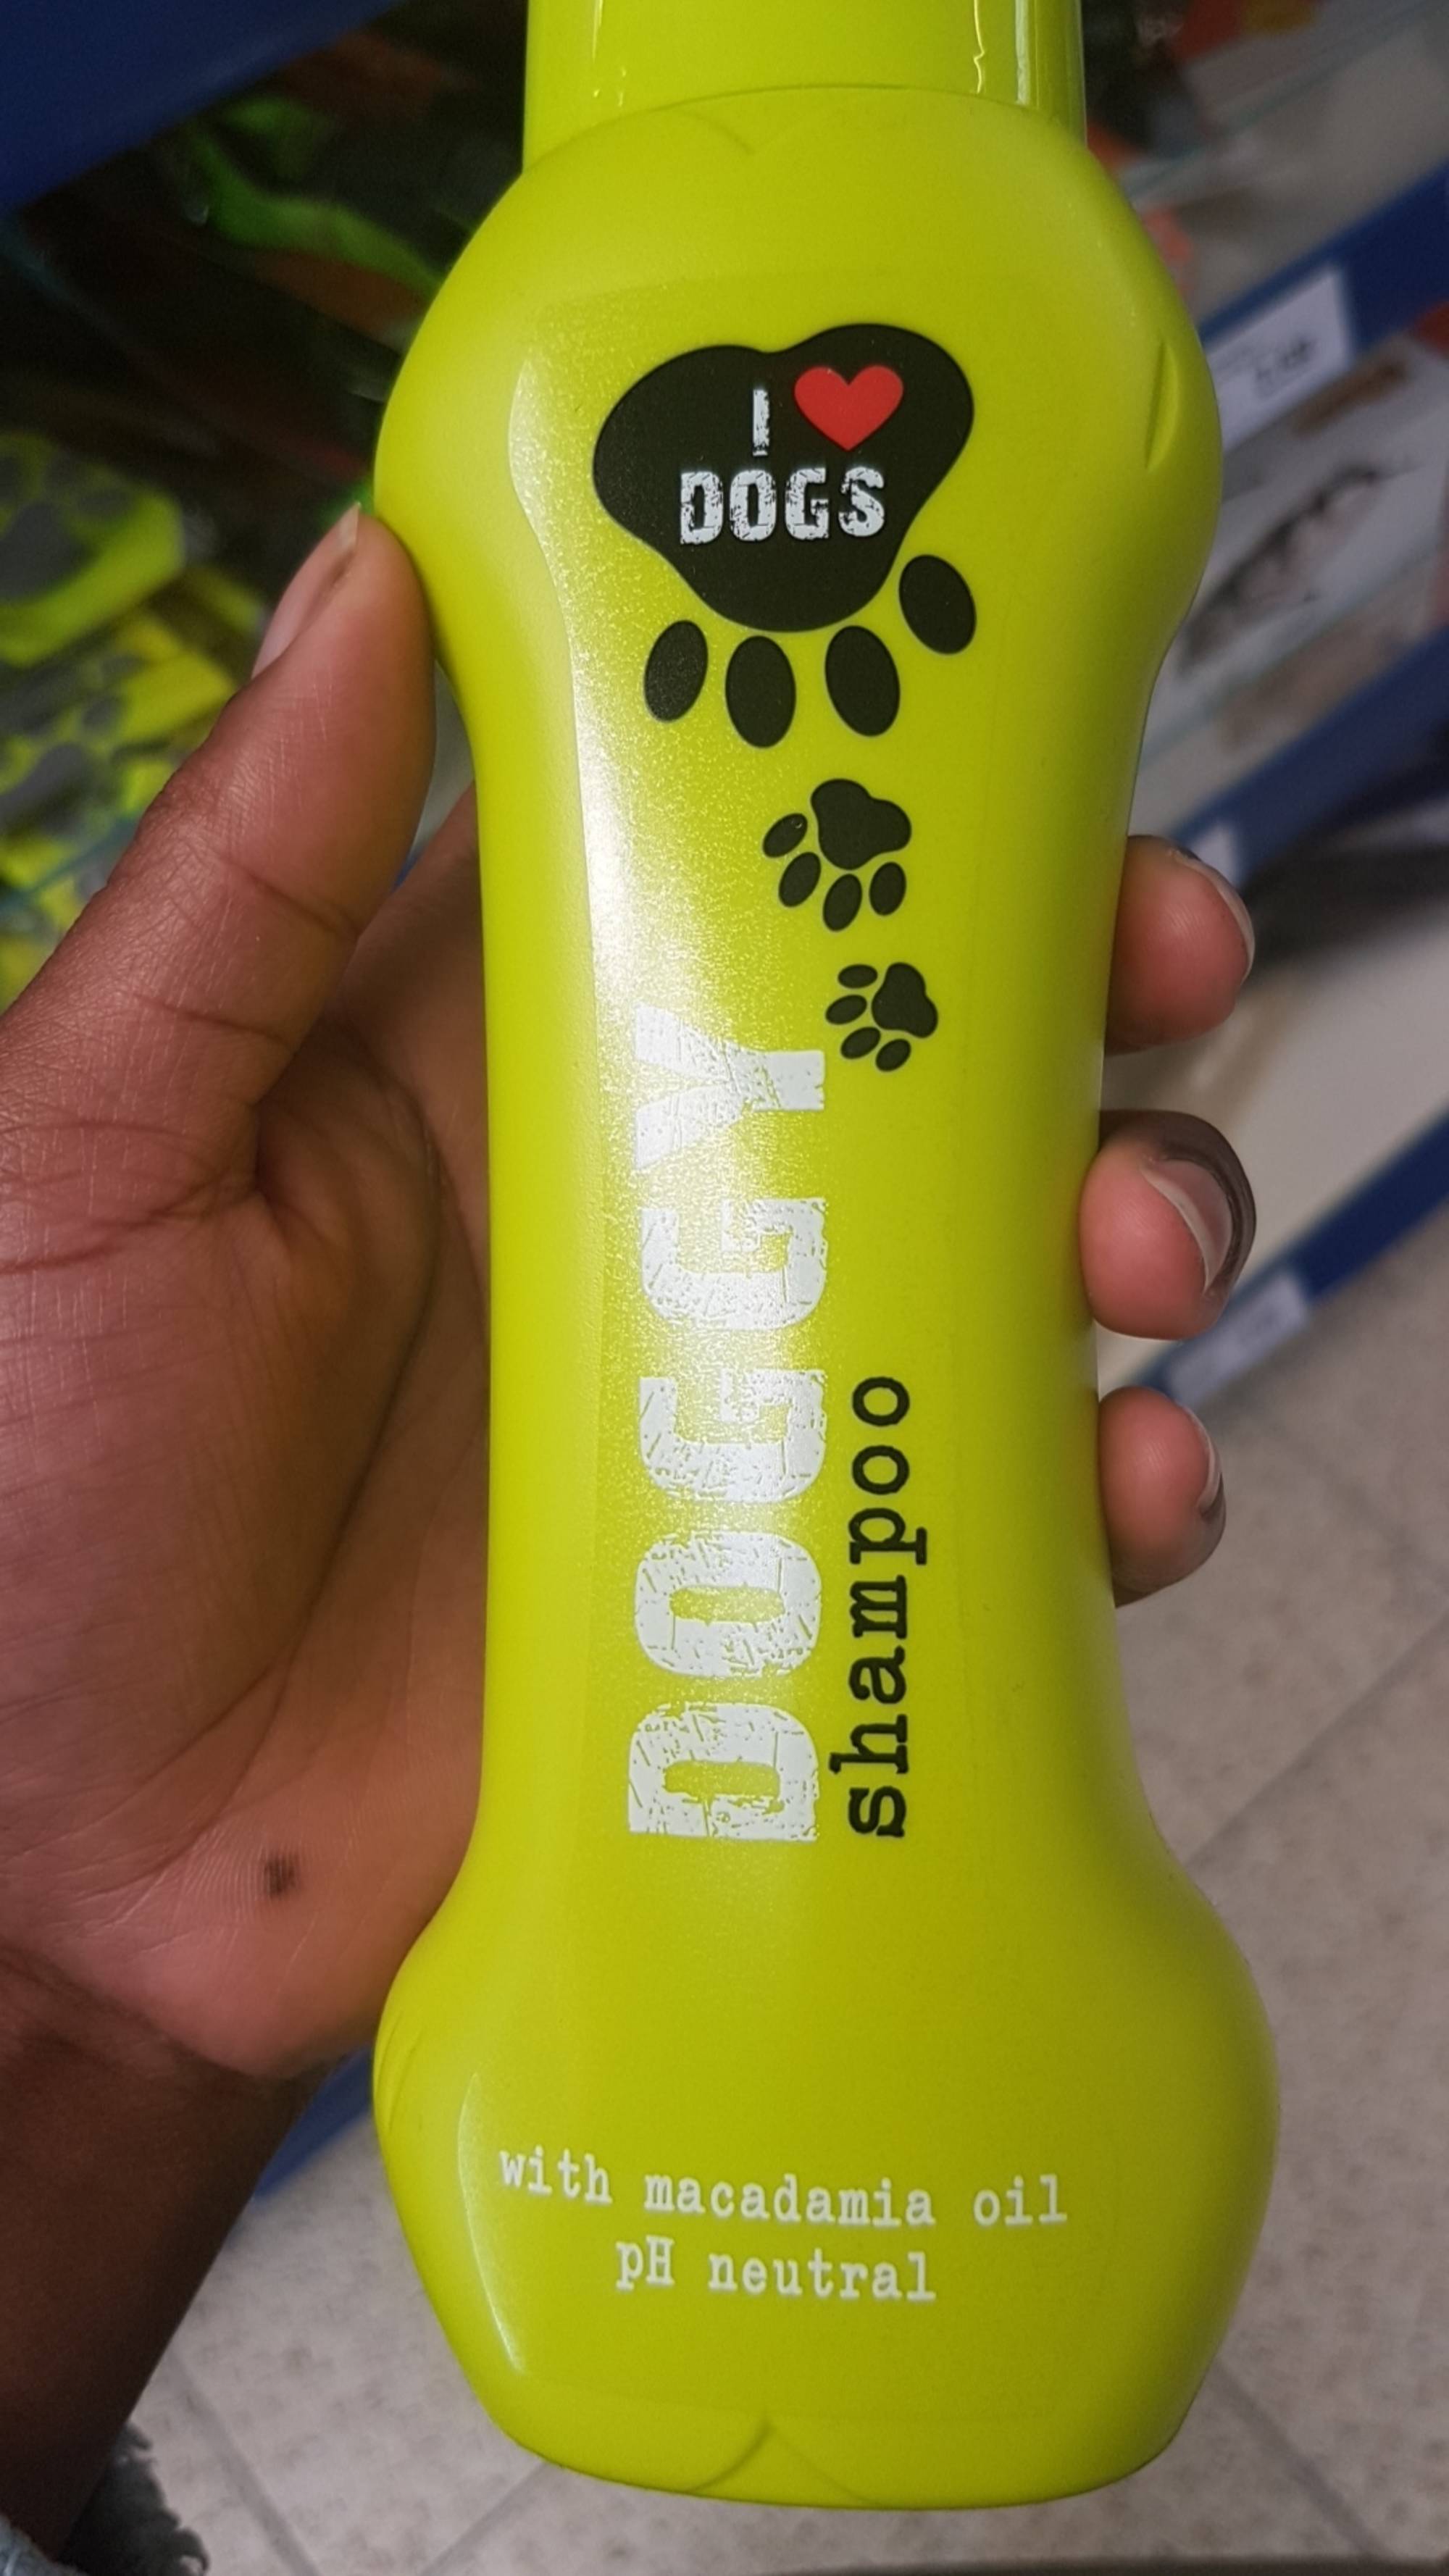 HEGRON - I love dogs - Doddy shampoo